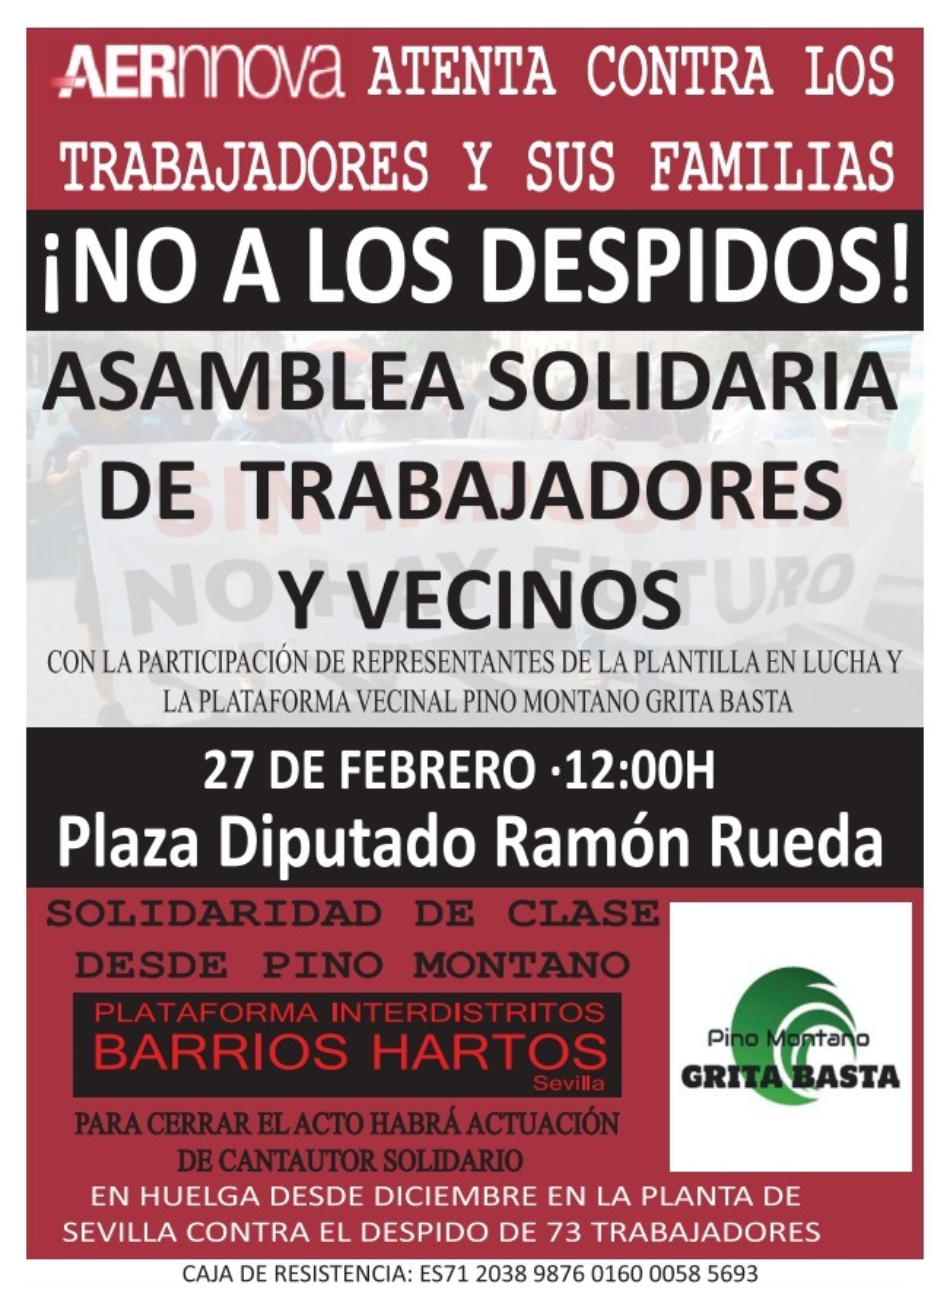 Barrios Hartos: acto de apoyo a los trabajadores de Aernnova, en huelga durante 80 días